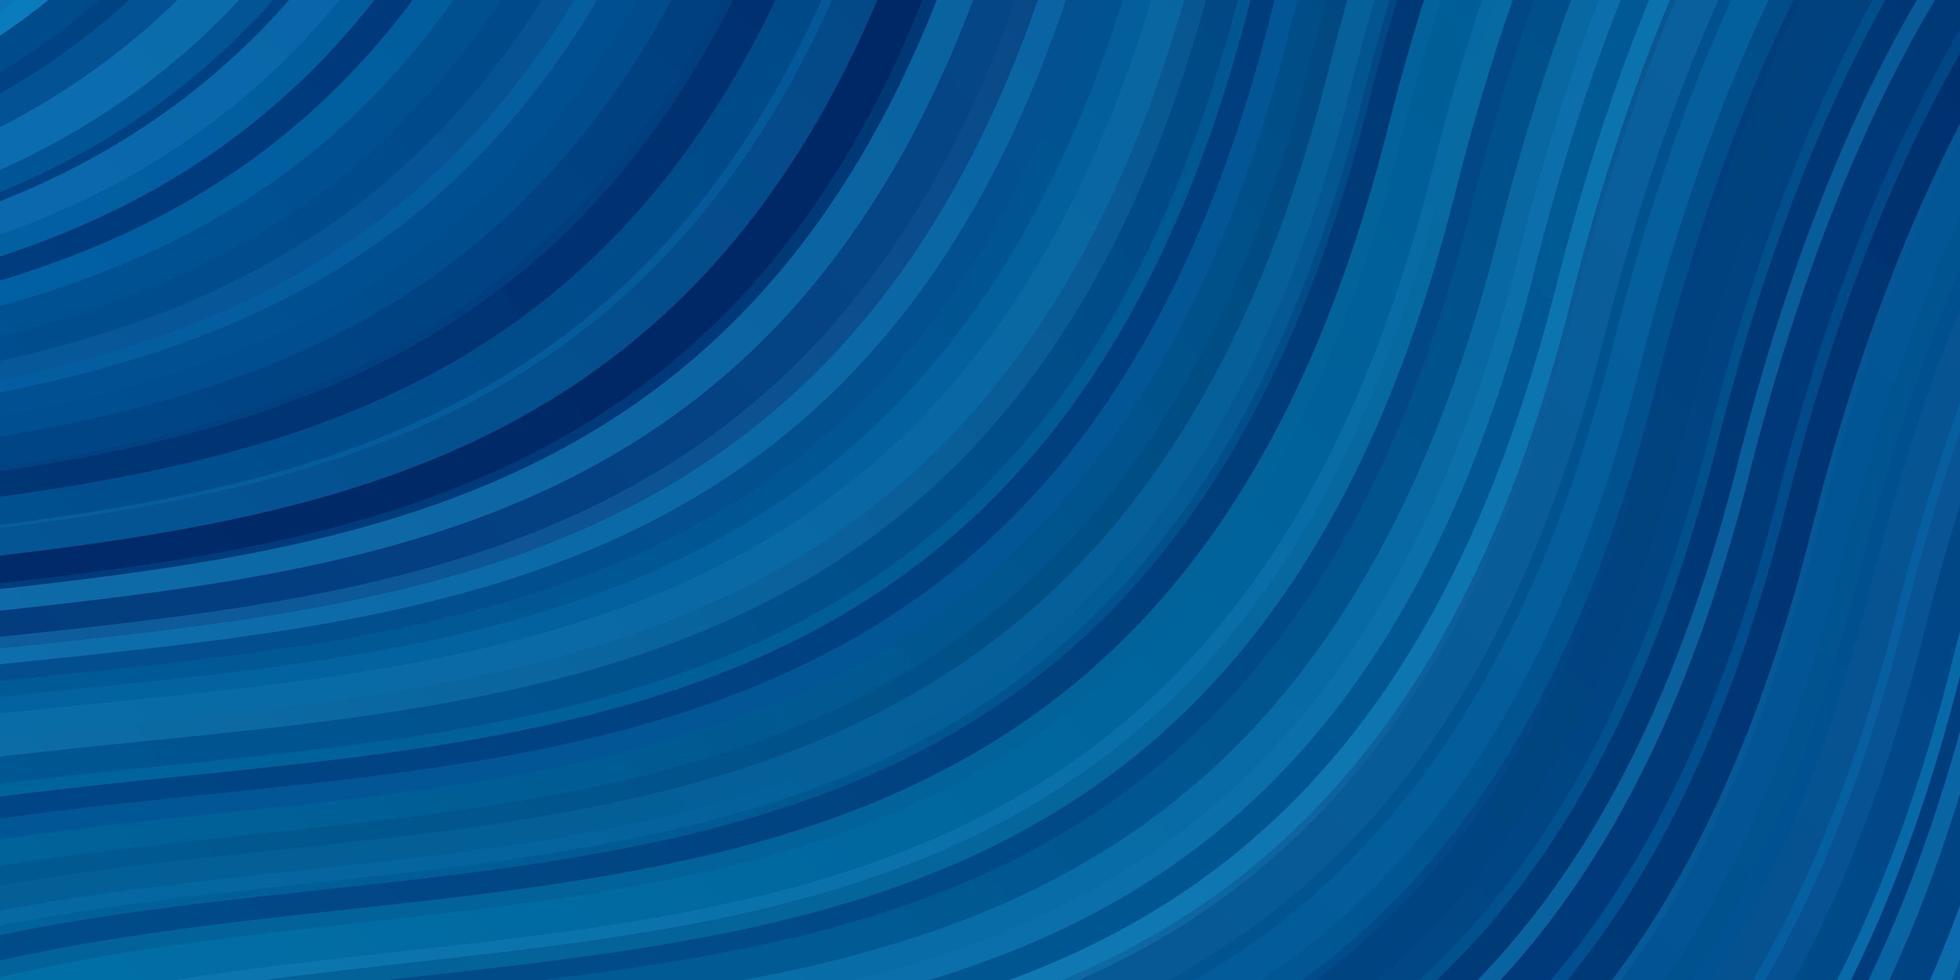 sfondo vettoriale azzurro con linee curve. illustrazione colorata in stile circolare con linee. design intelligente per le tue promozioni.